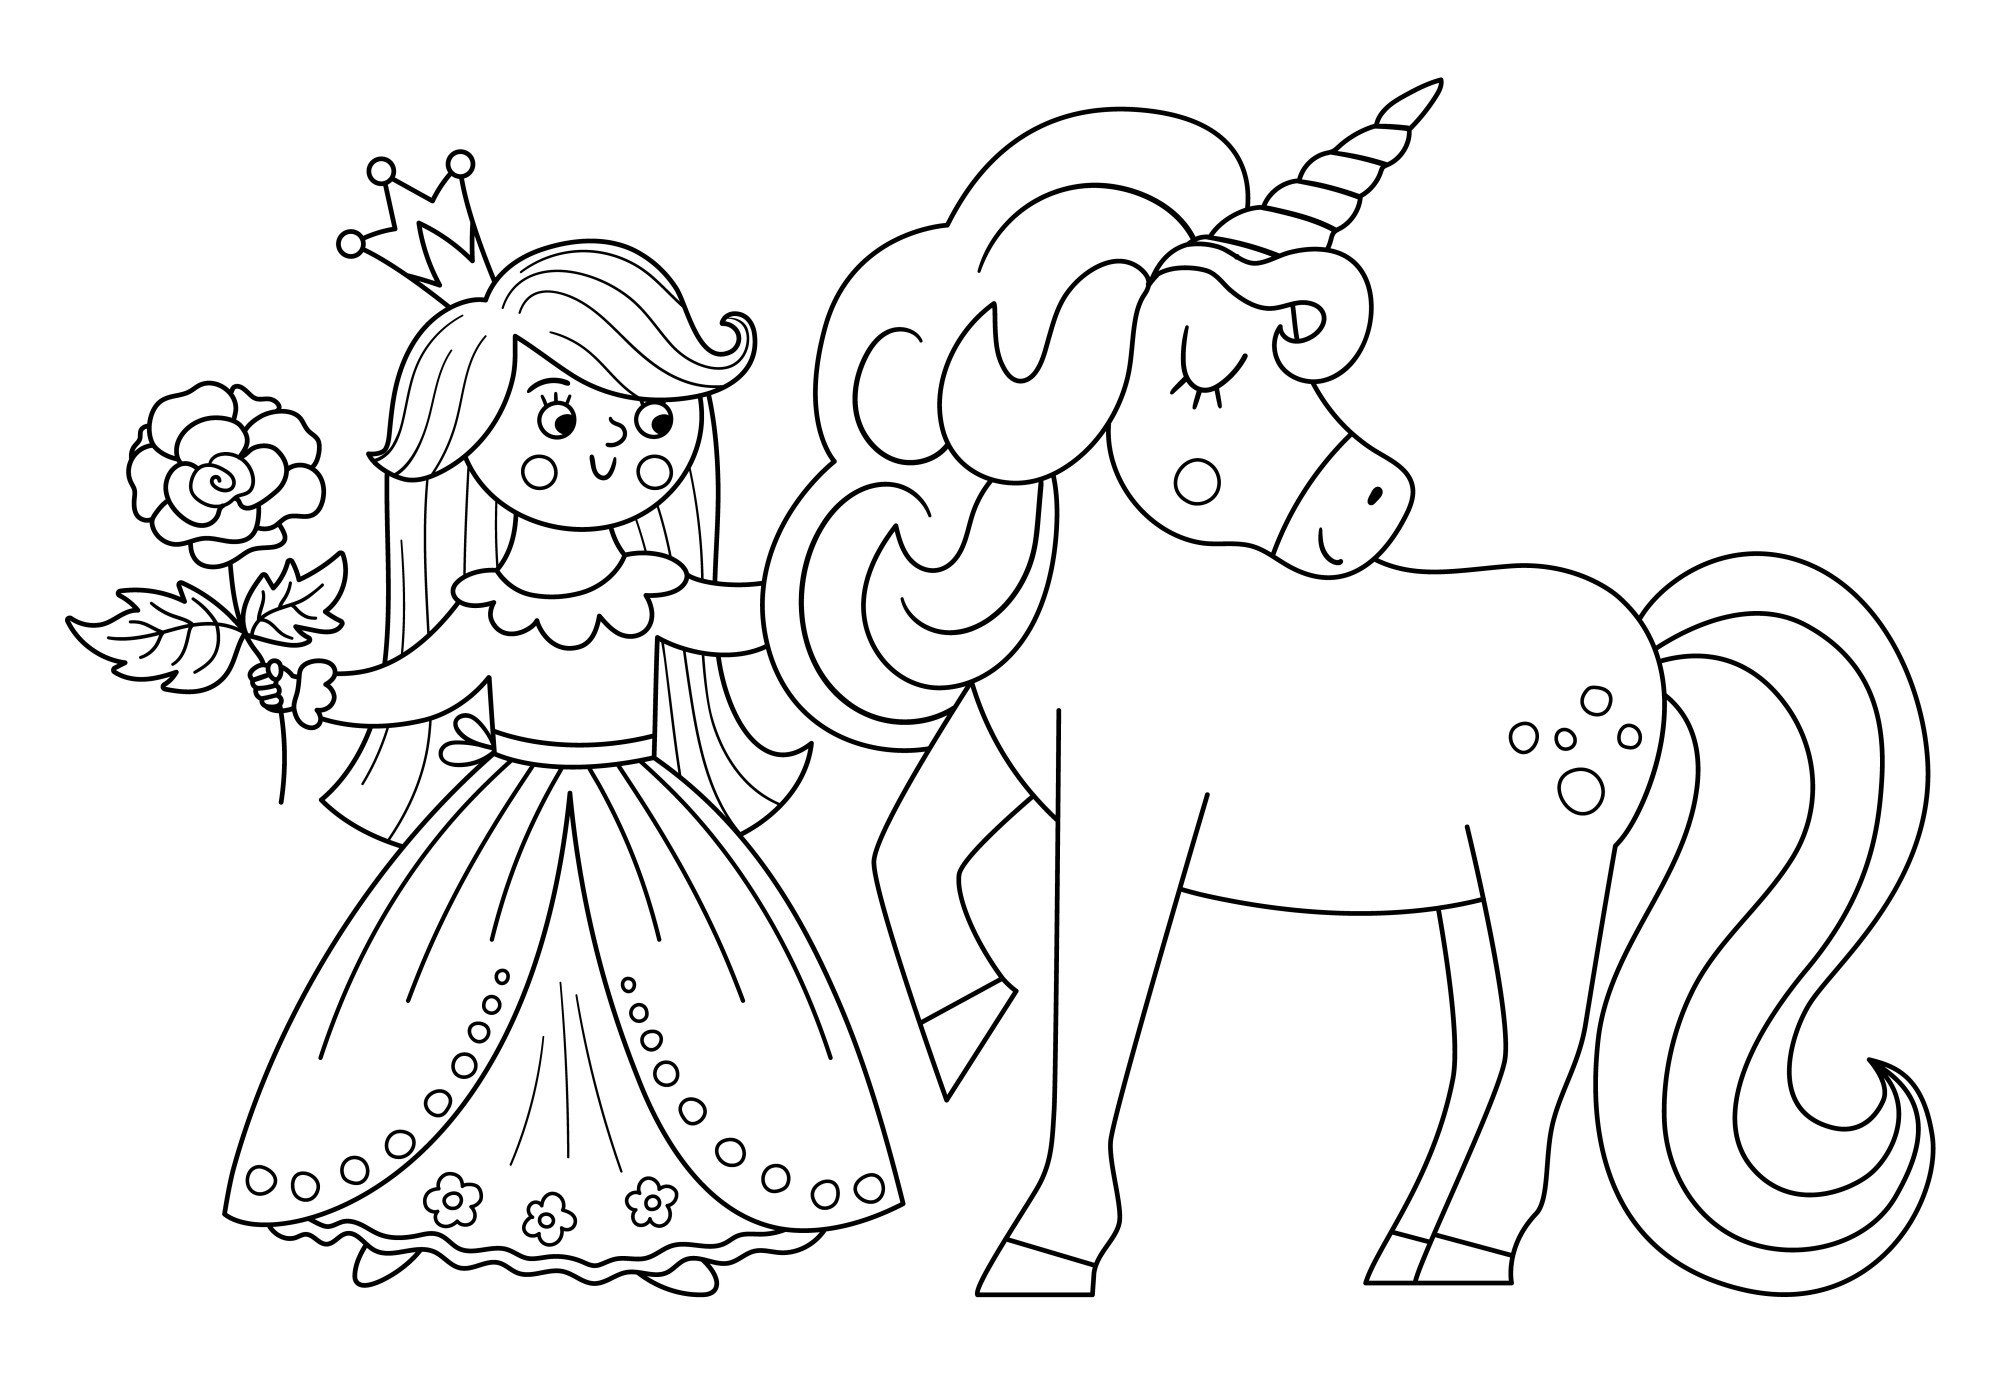 Раскраска для детей: принцесса с единорогом